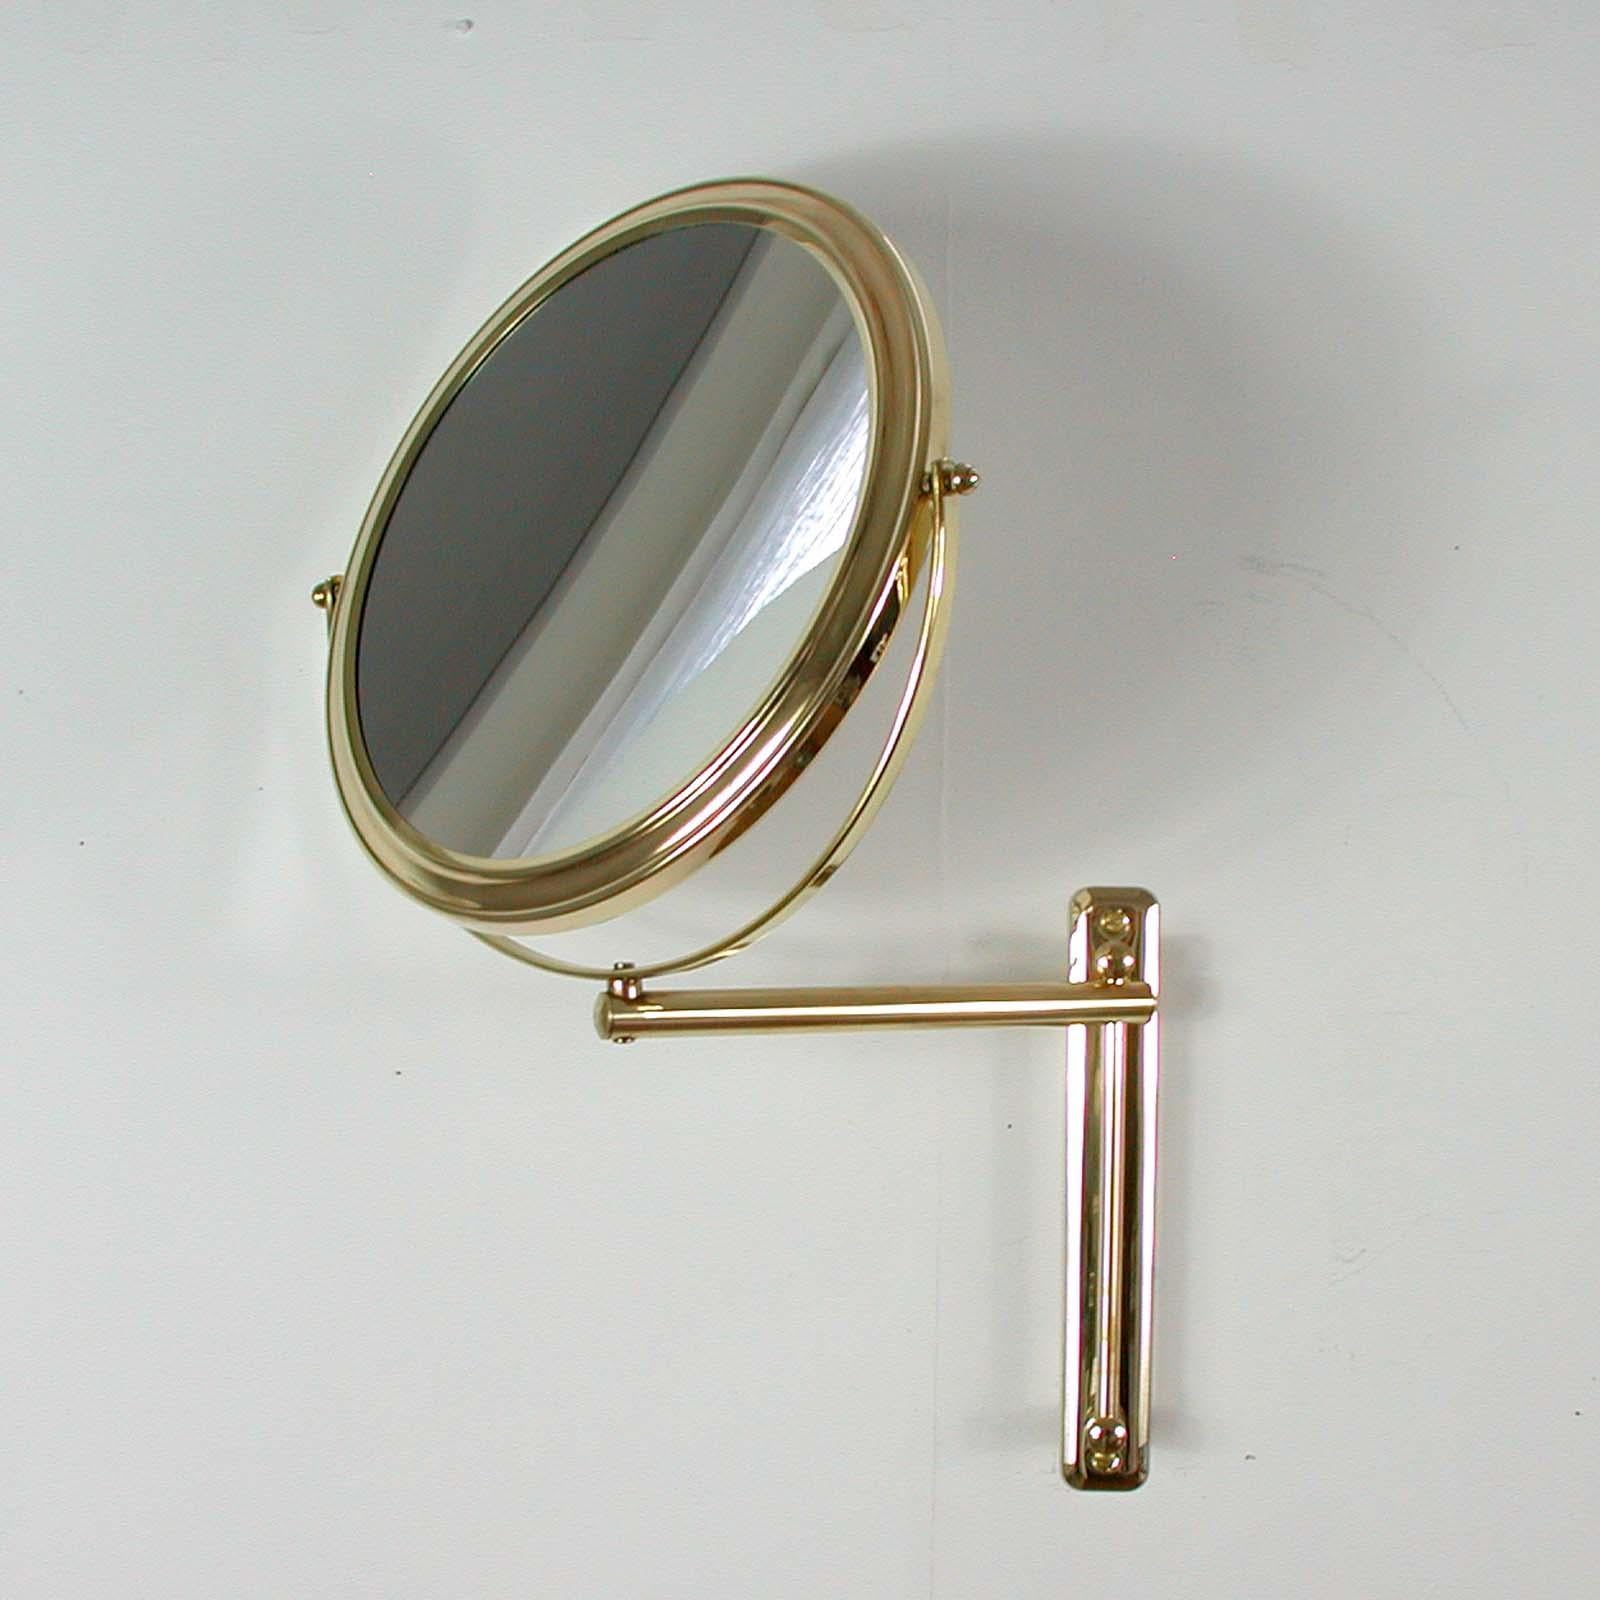 Cet élégant miroir de courtoisie rond a été conçu et fabriqué en Italie dans les années 1950-1960. Il est doté d'un cadre rond en laiton et d'un bras mural en laiton. Le miroir est réglable en hauteur. Il peut également être tourné de gauche à